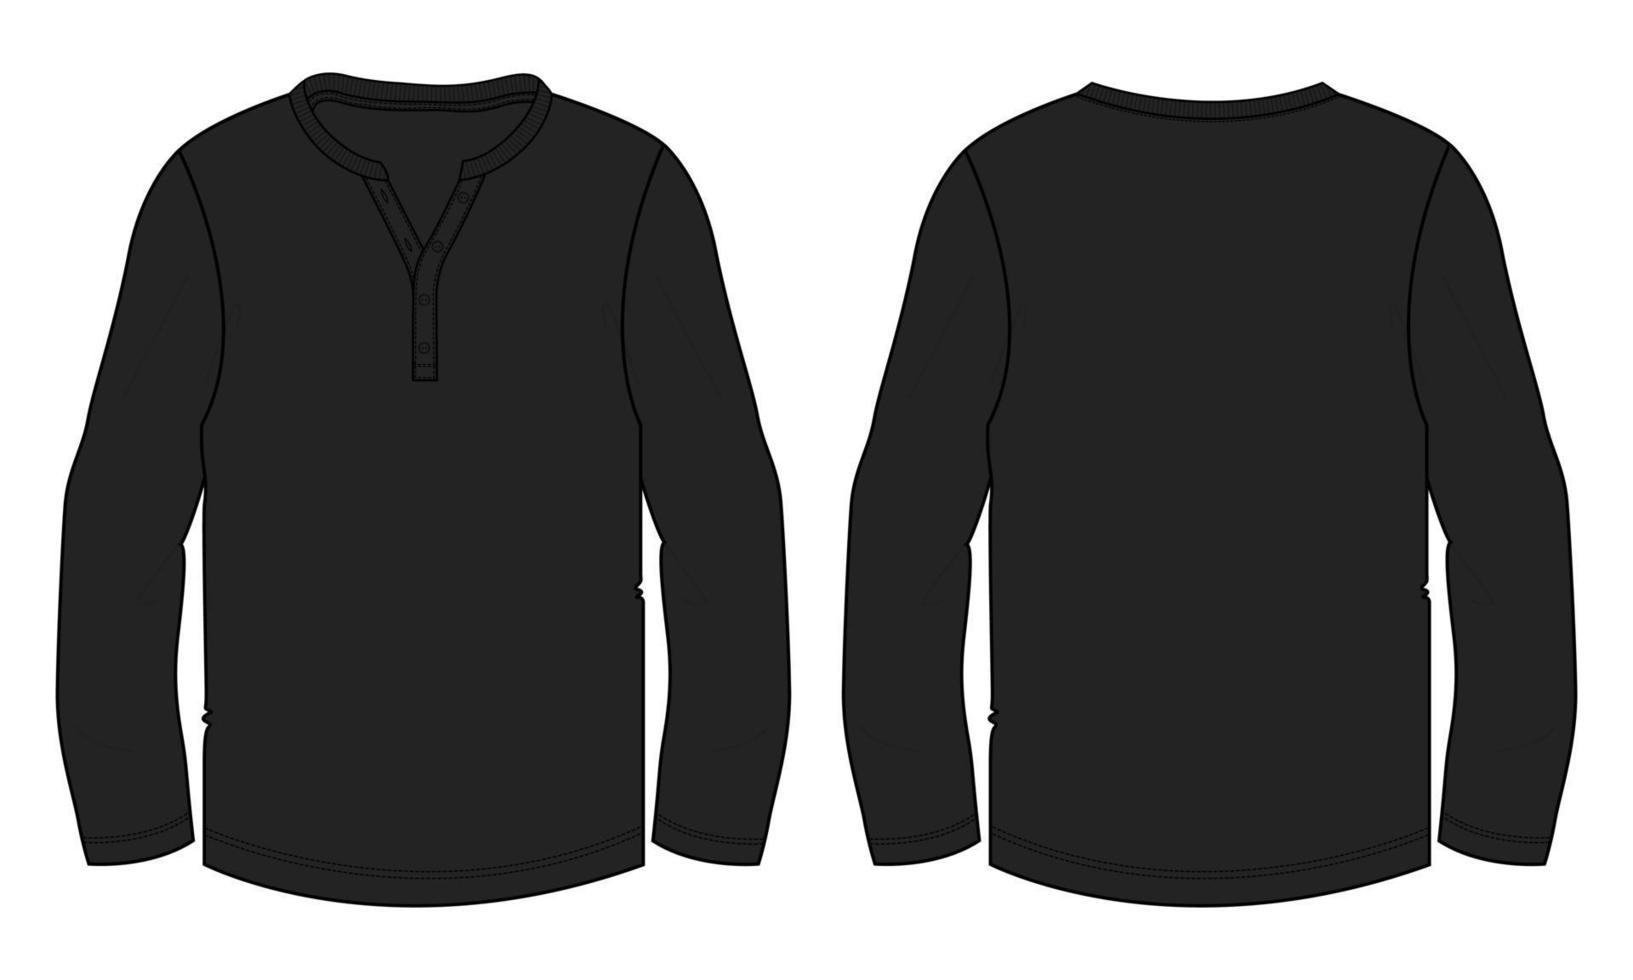 camiseta de manga larga moda técnica boceto plano ilustración vectorial plantilla negra plantilla vistas frontal y posterior vector